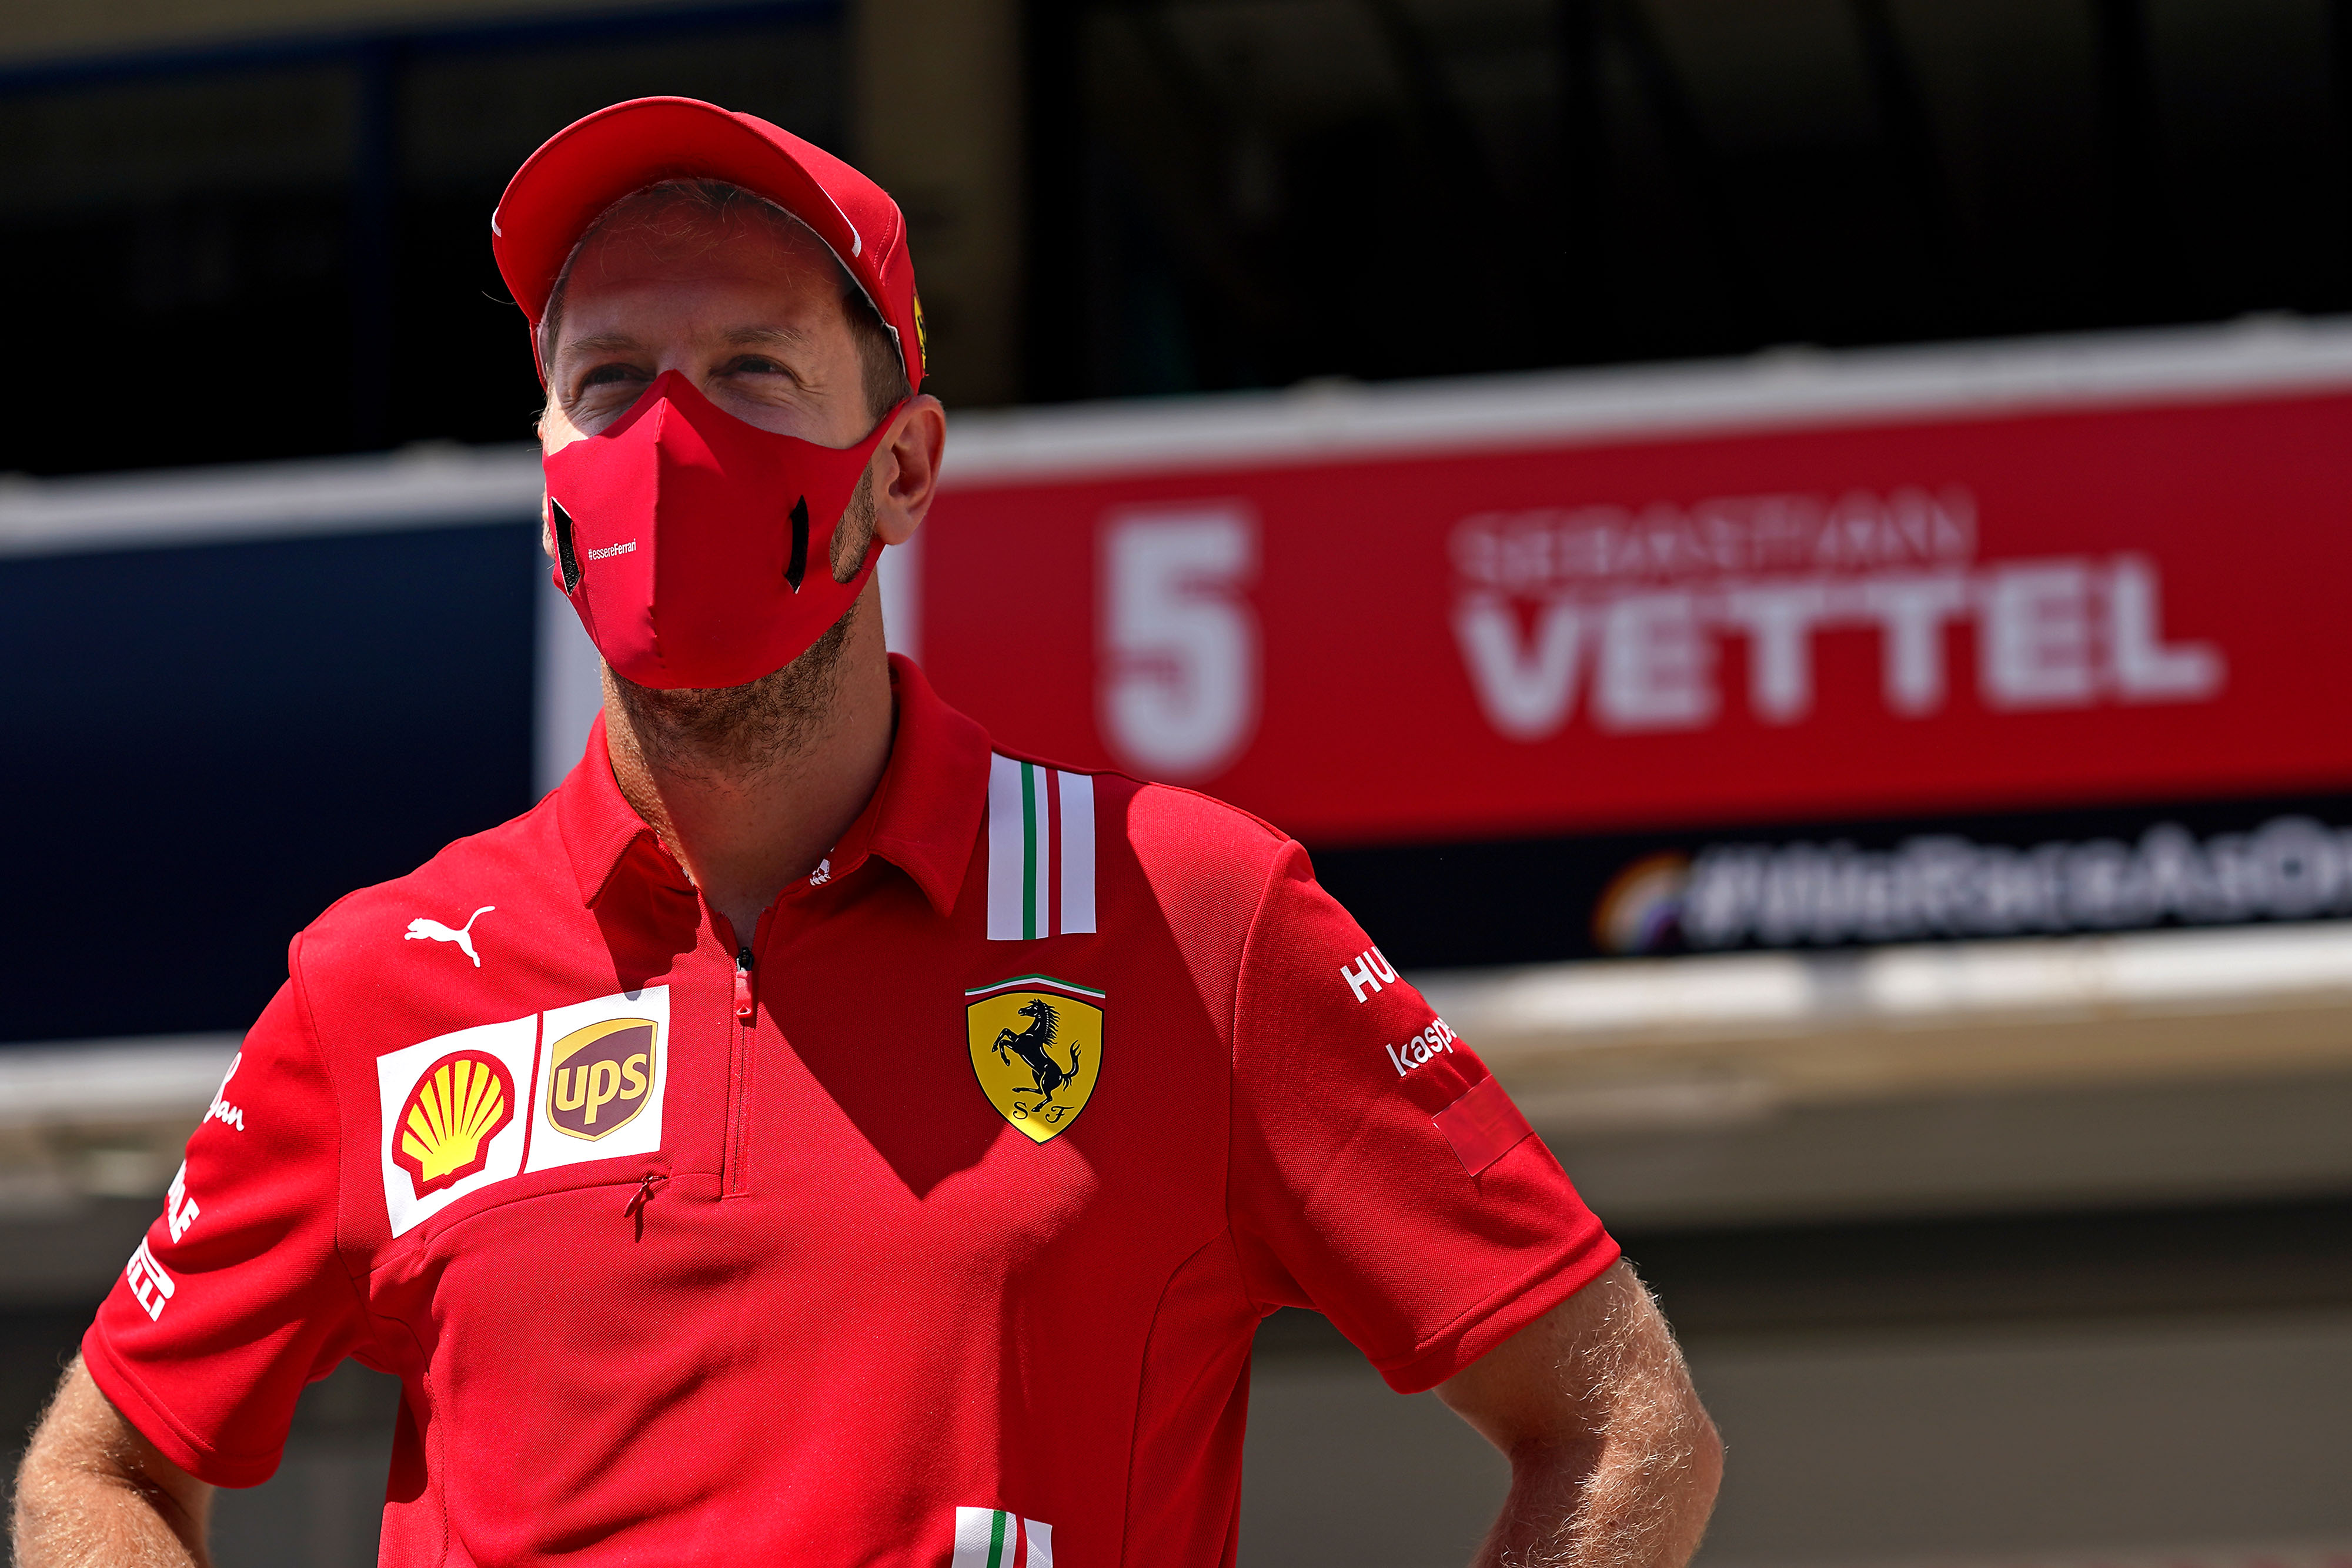 Itt a bejelentés, megvan Vettel új Formula–1-es csapata